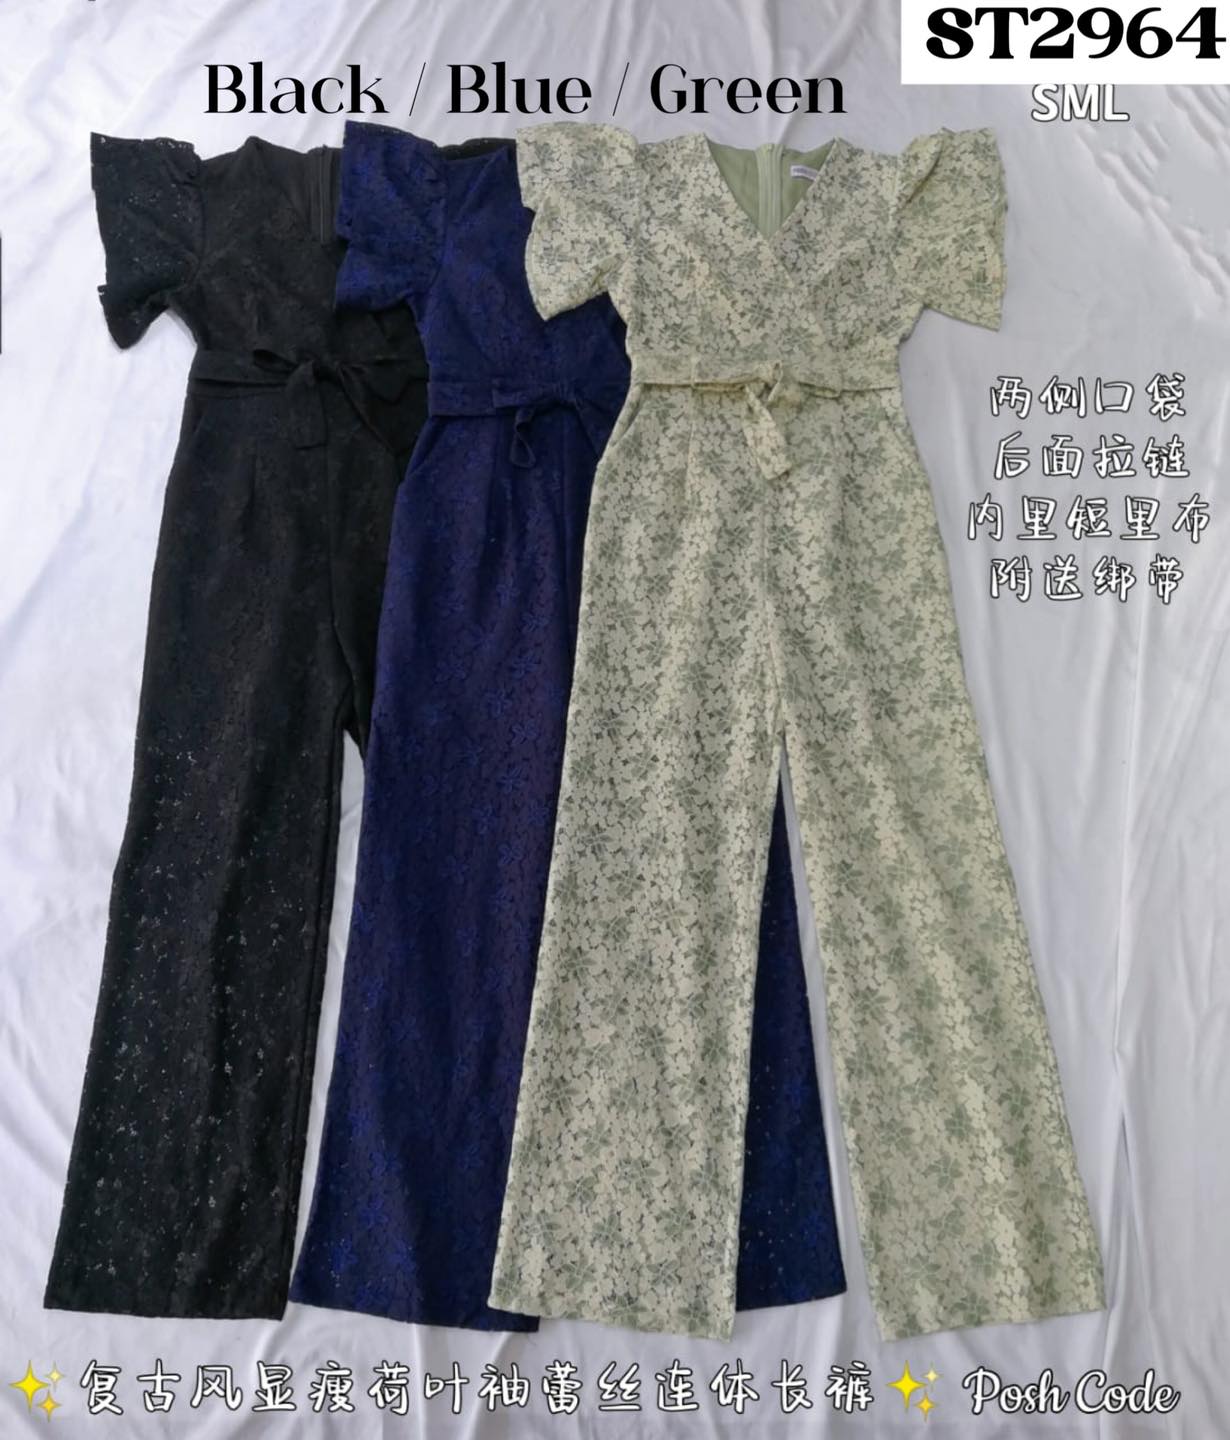 复古风显瘦荷叶袖连身裤 (ST2964)